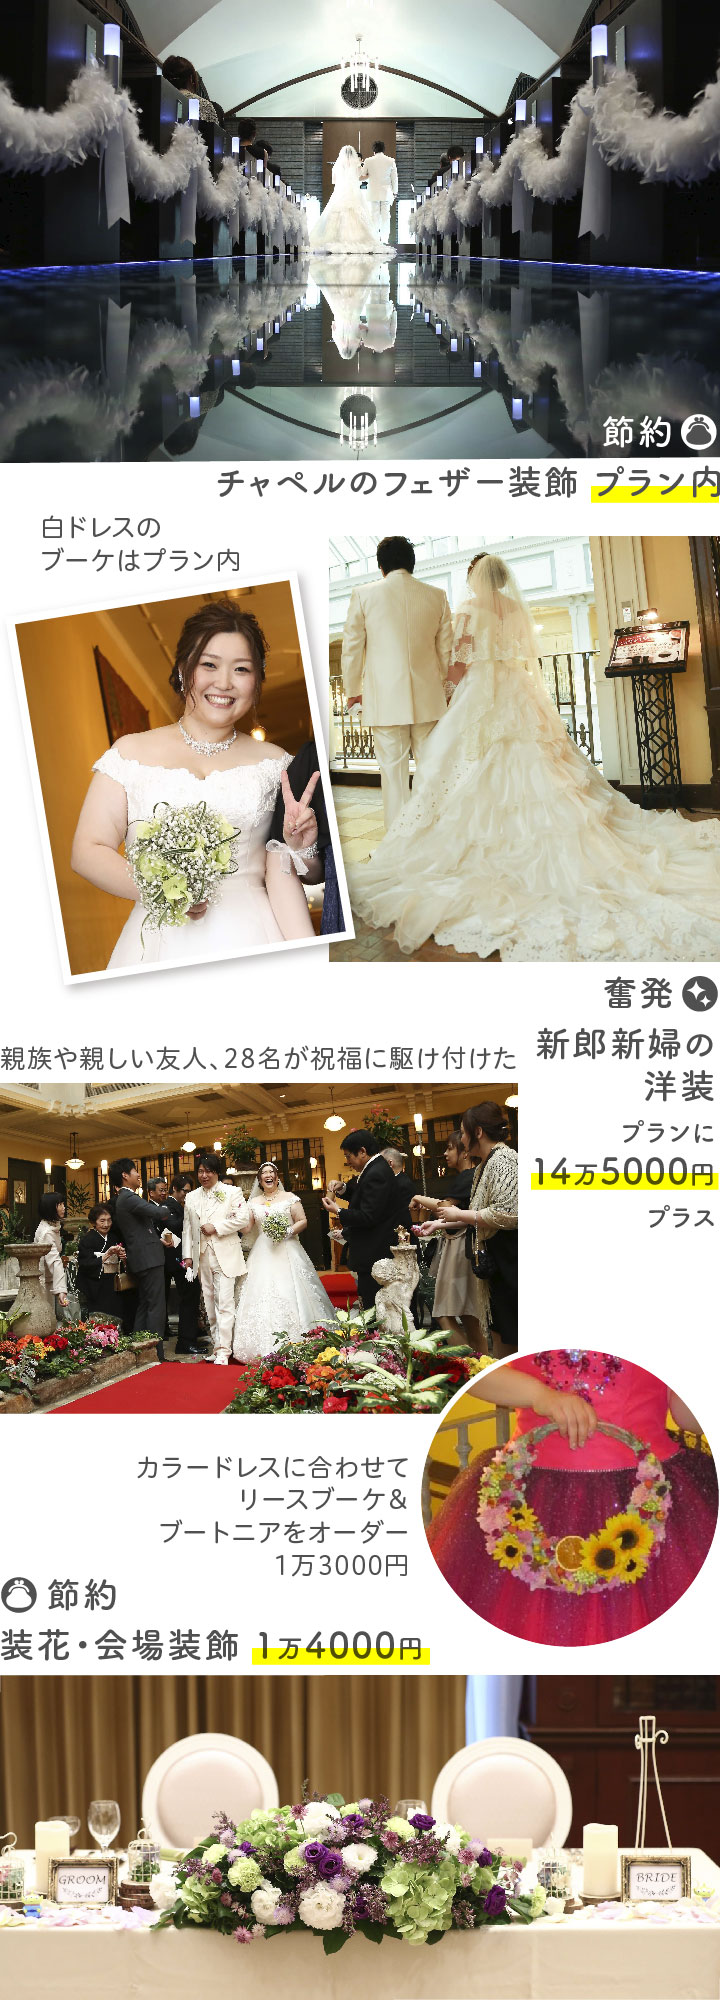 総額53万円の結婚式写真と、奮発節約ポイントのコラージュ